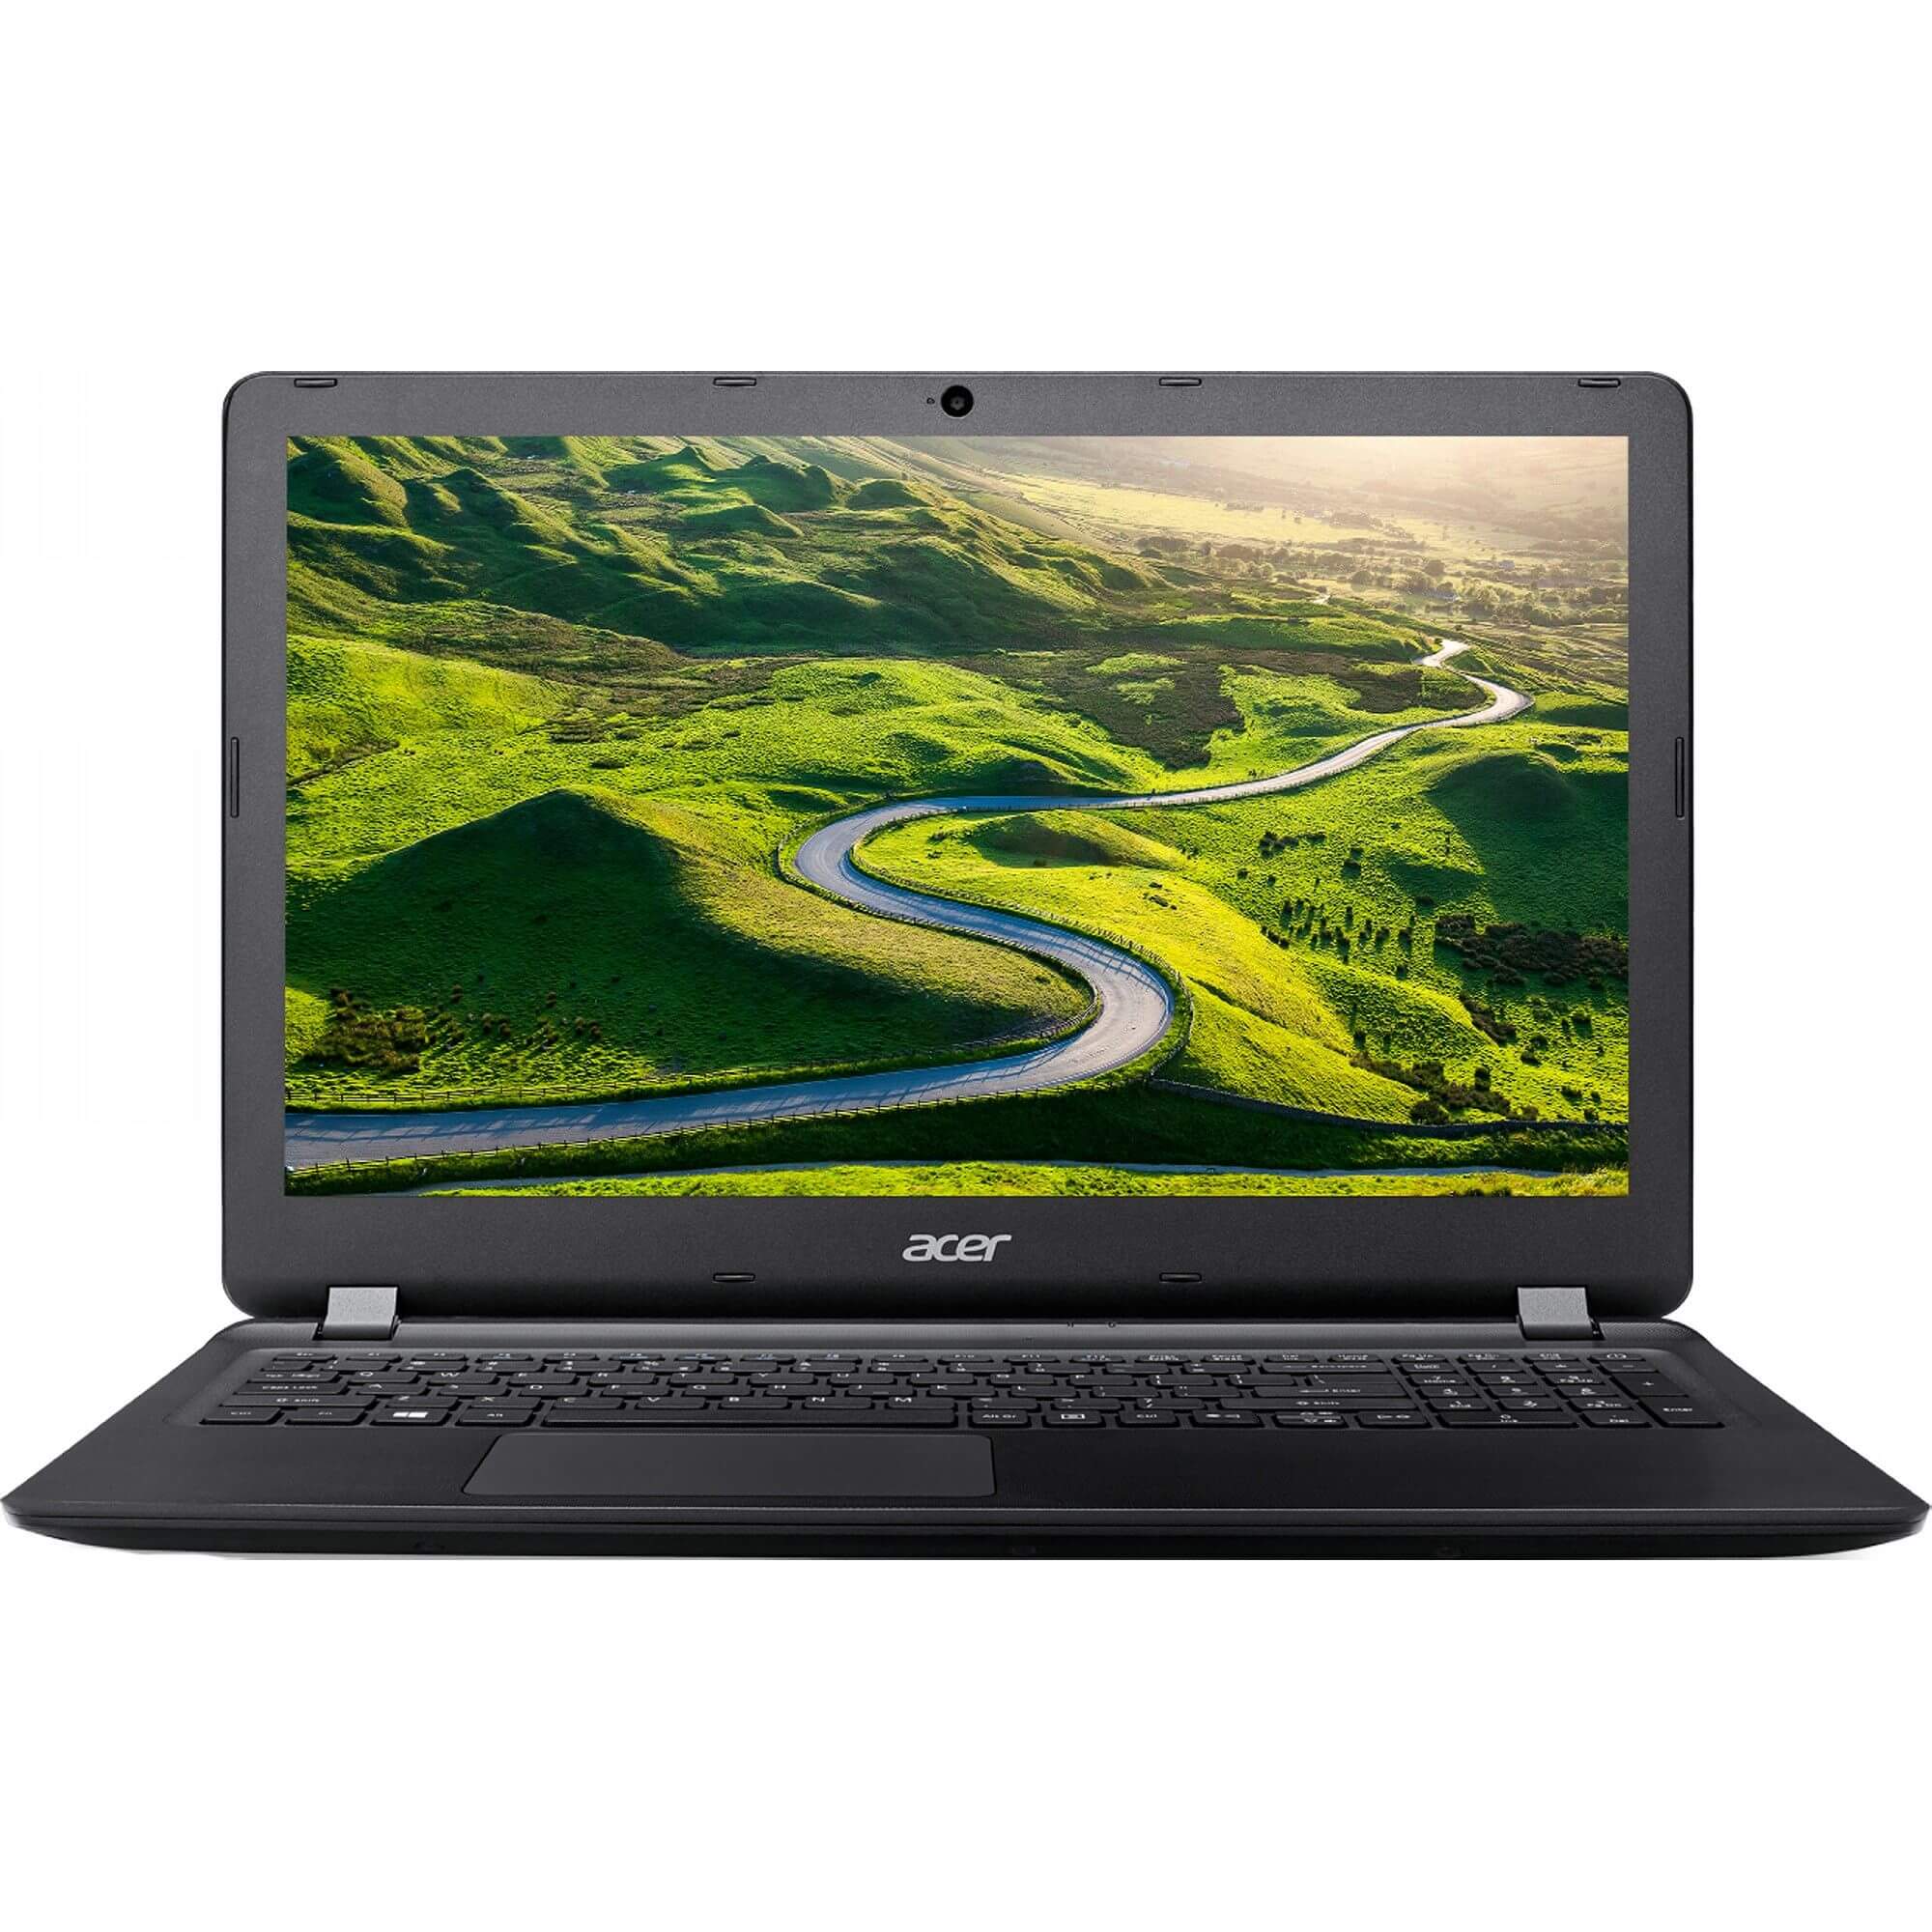 Laptop Acer ES1-523-88M3, AMD A8-7410, 4GB DDR3, SSD 128GB, AMD Radeon, Linux